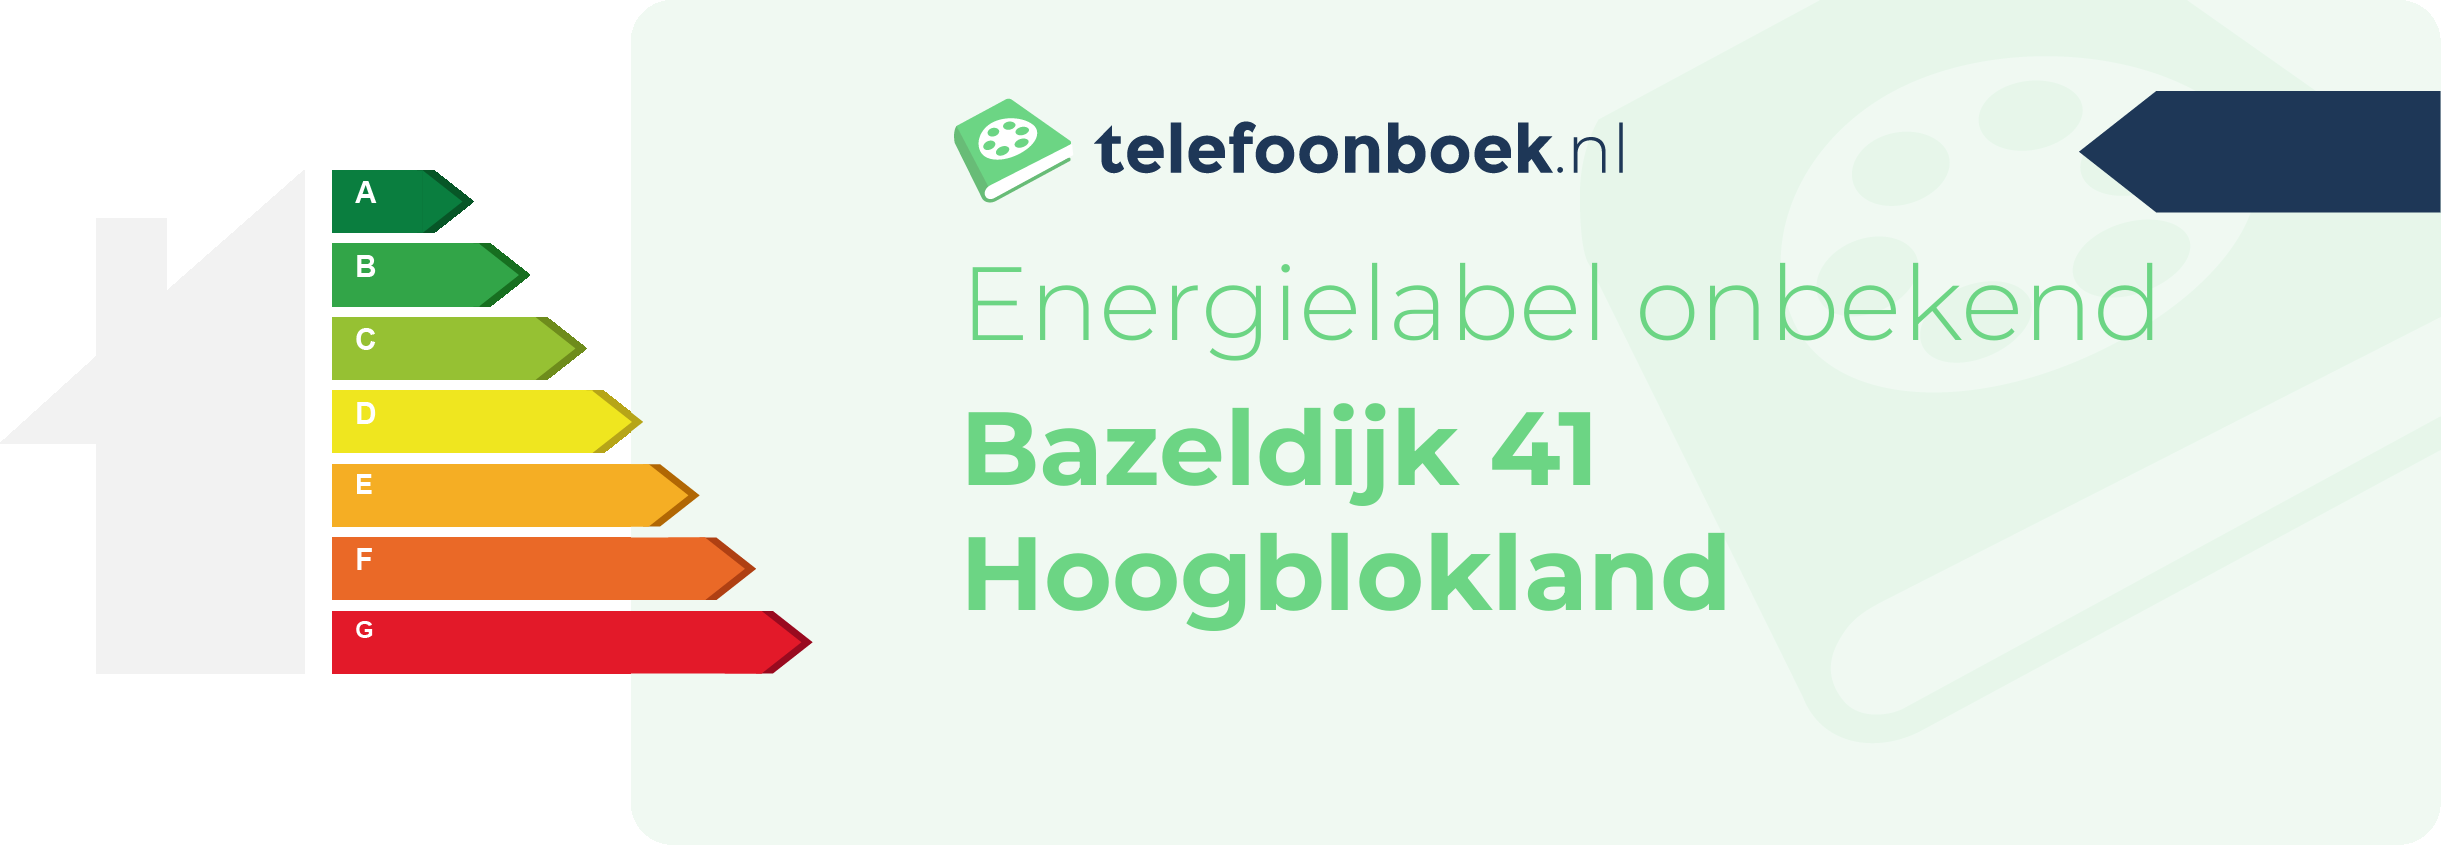 Energielabel Bazeldijk 41 Hoogblokland